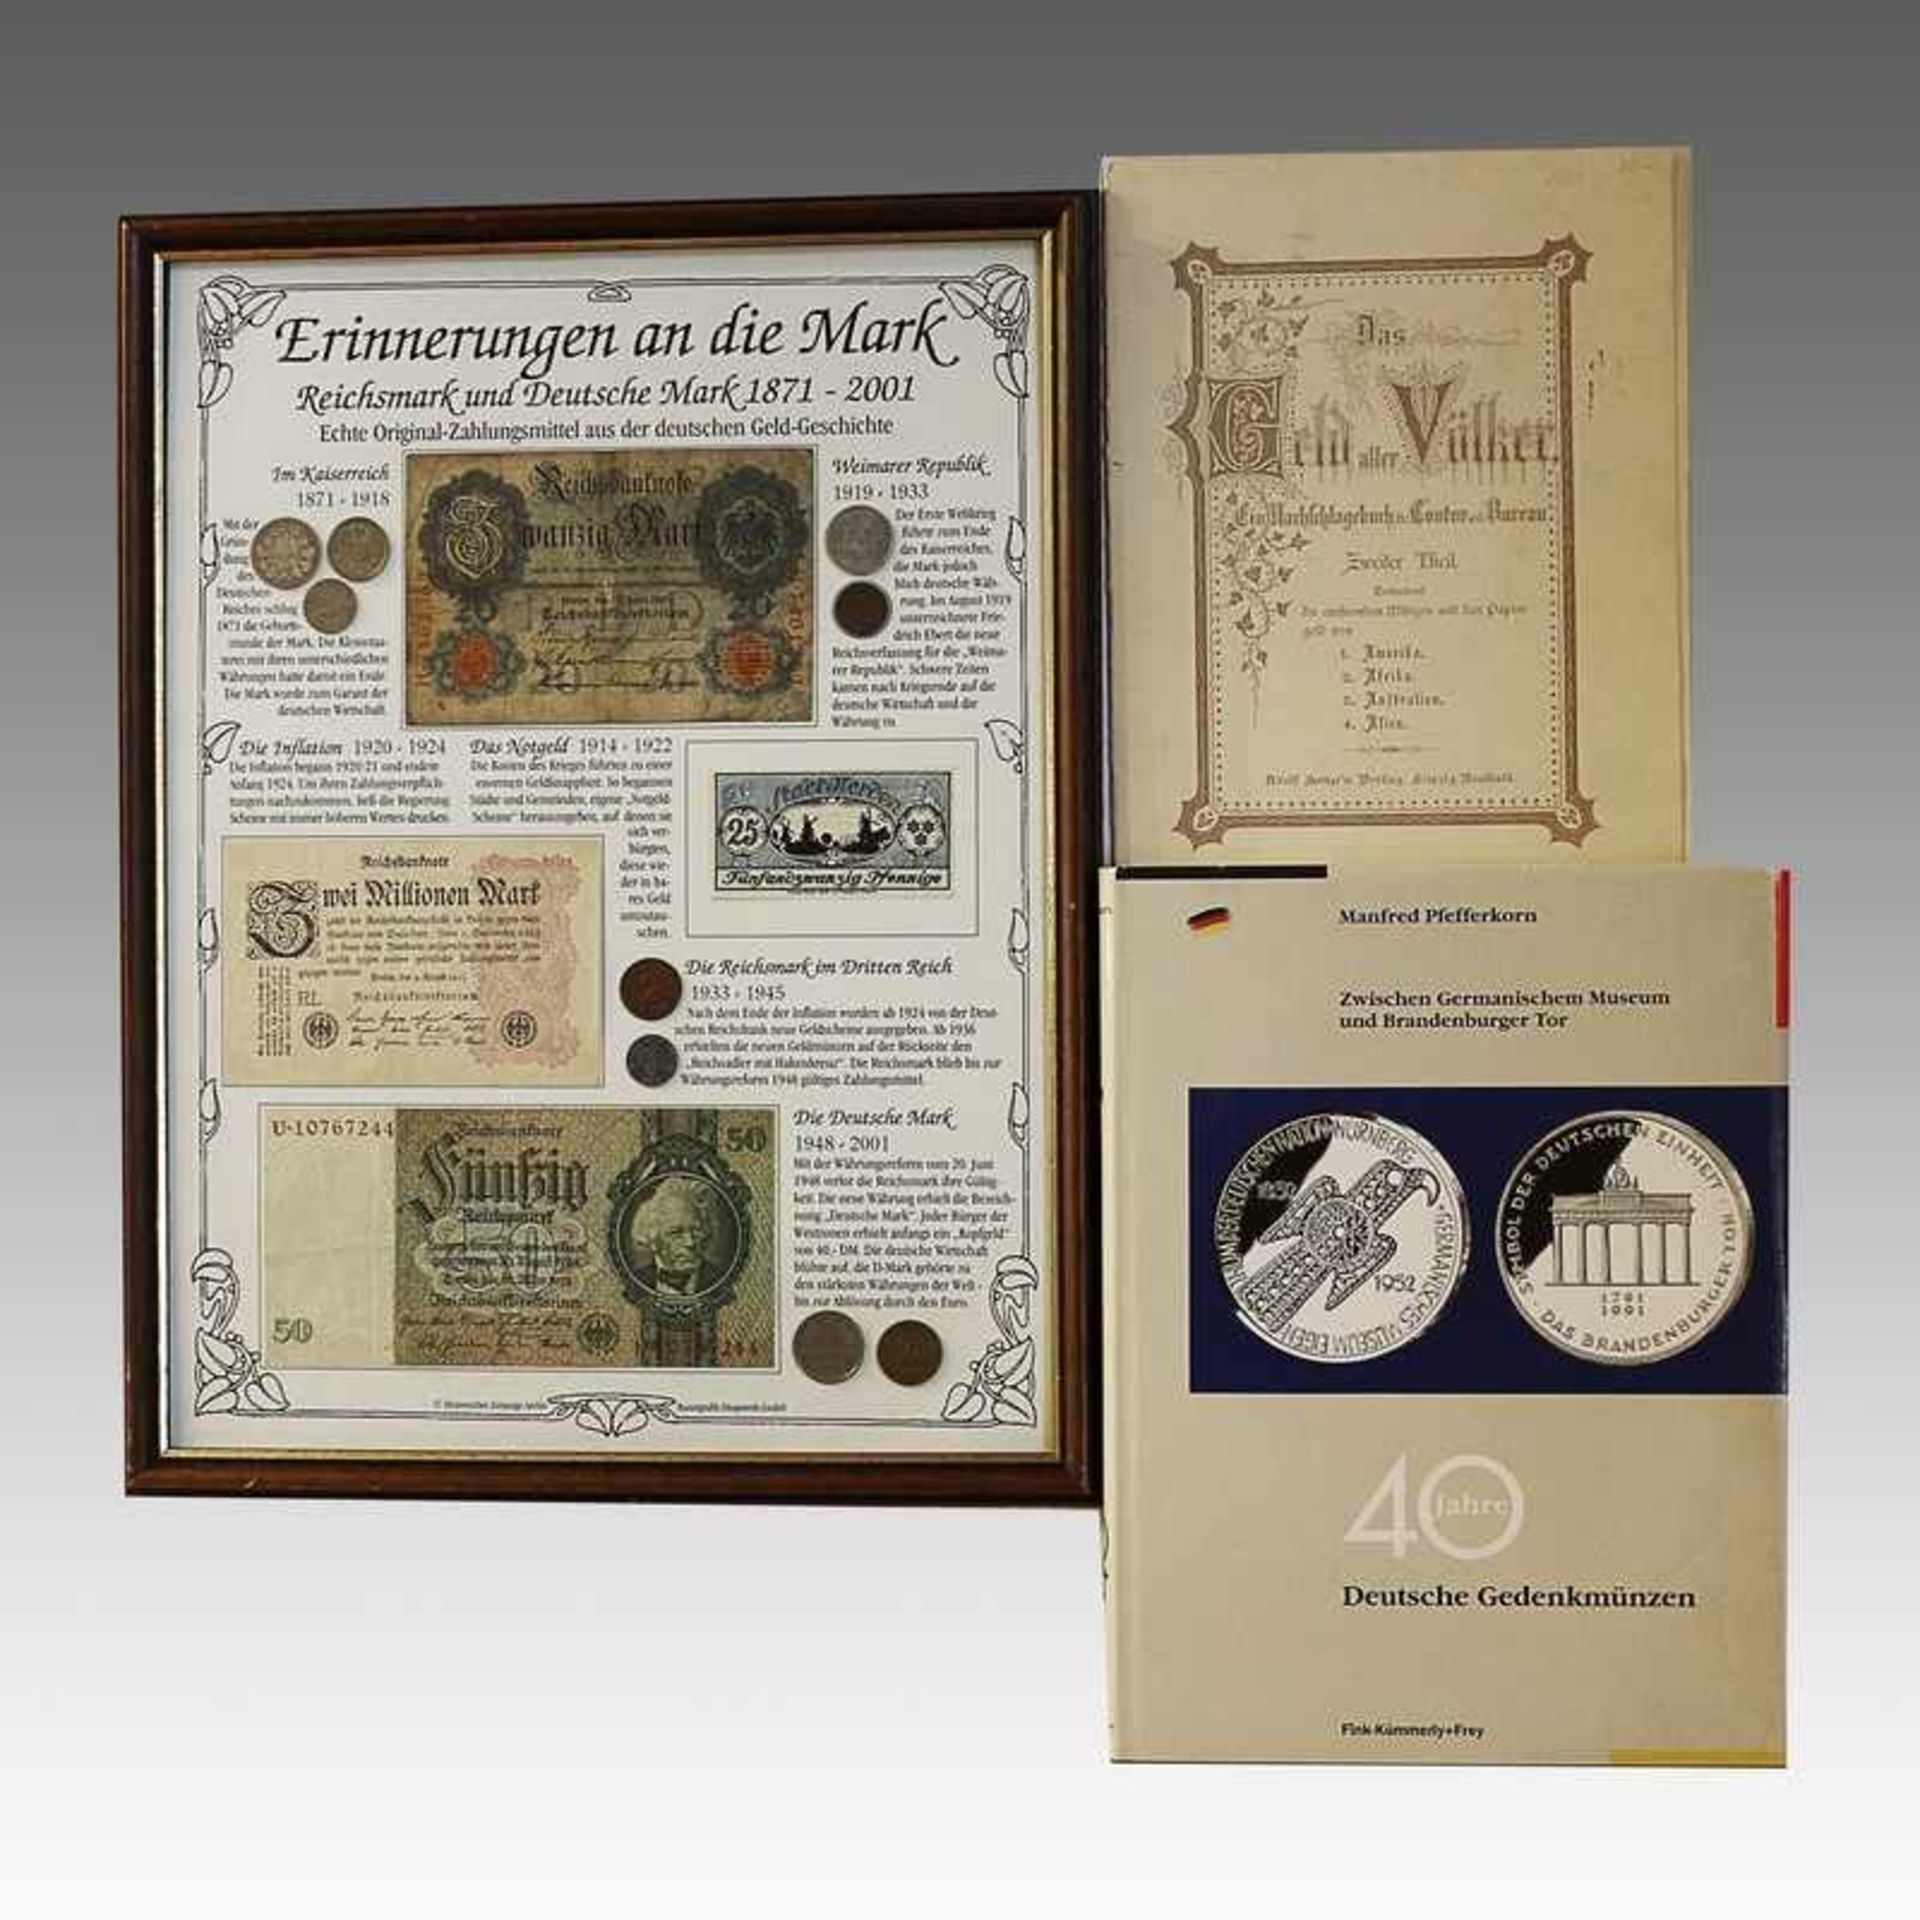 Konvolut Collage "Erinnerungen an die Mark" Reichsmark und Deutsche Mark 1871-2001, Histor.